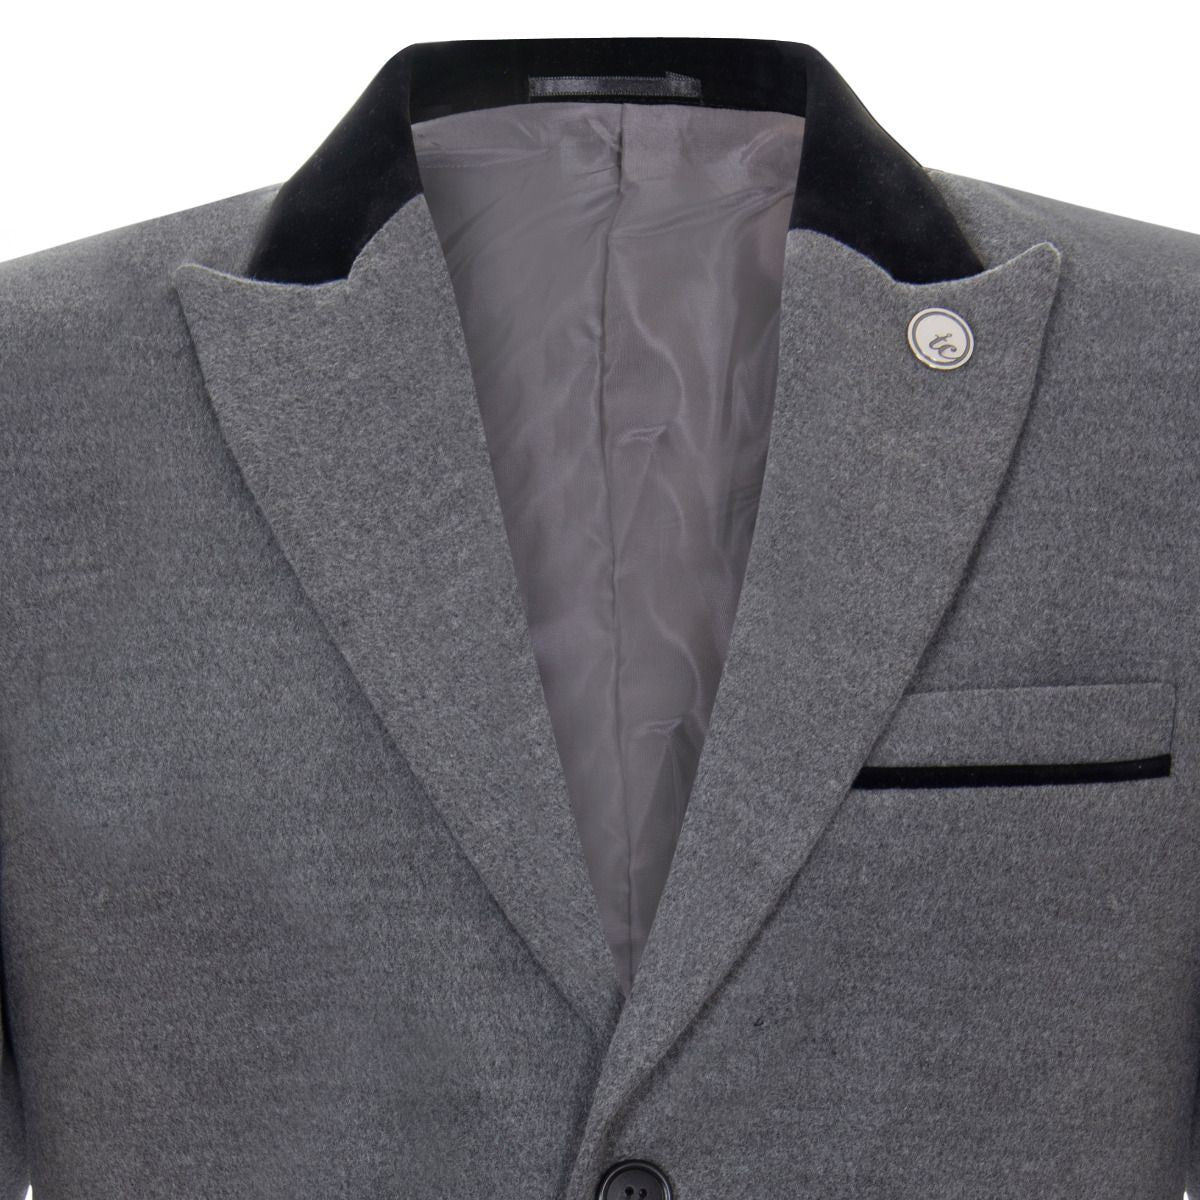 Mens 3/4 Grey Long Crombie Overcoat Jacket Herringbone Tweed Coat Peaky Blinder - Upperclass Fashions 